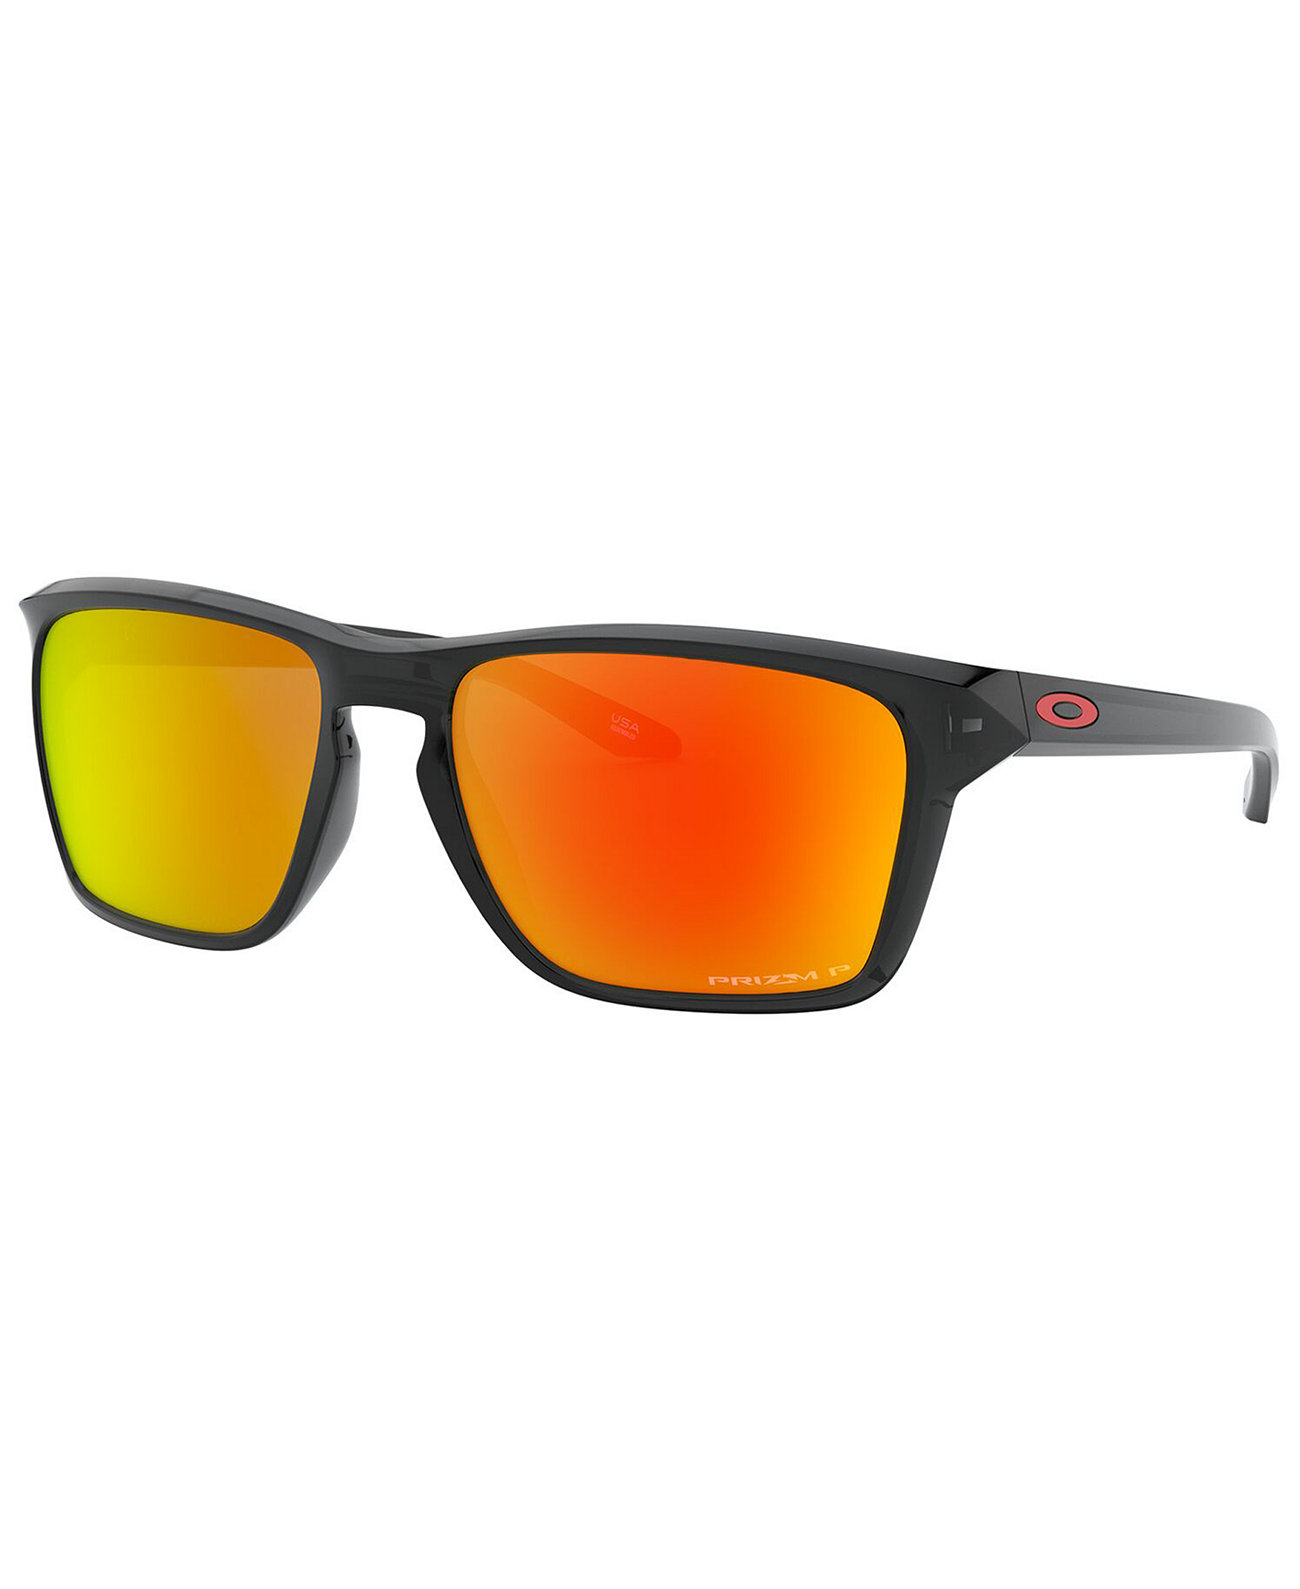 Поляризованные солнцезащитные очки, OO9448 57 SYLAS Oakley